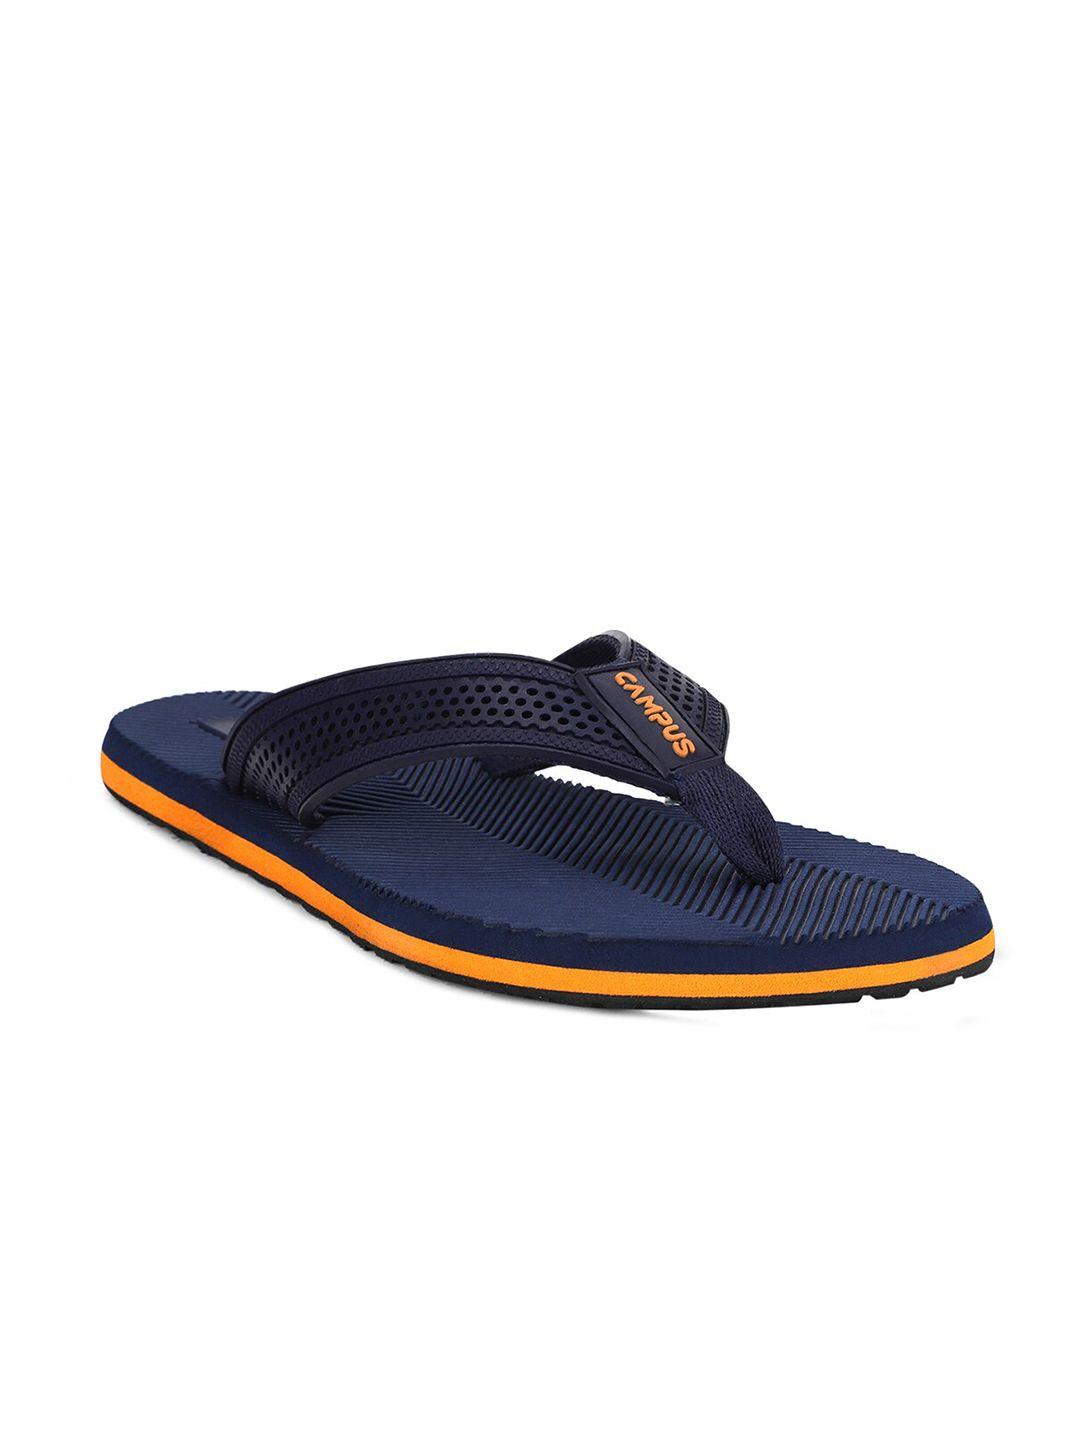 Campus Men Navy Blue & Orange Thong Flip-Flops